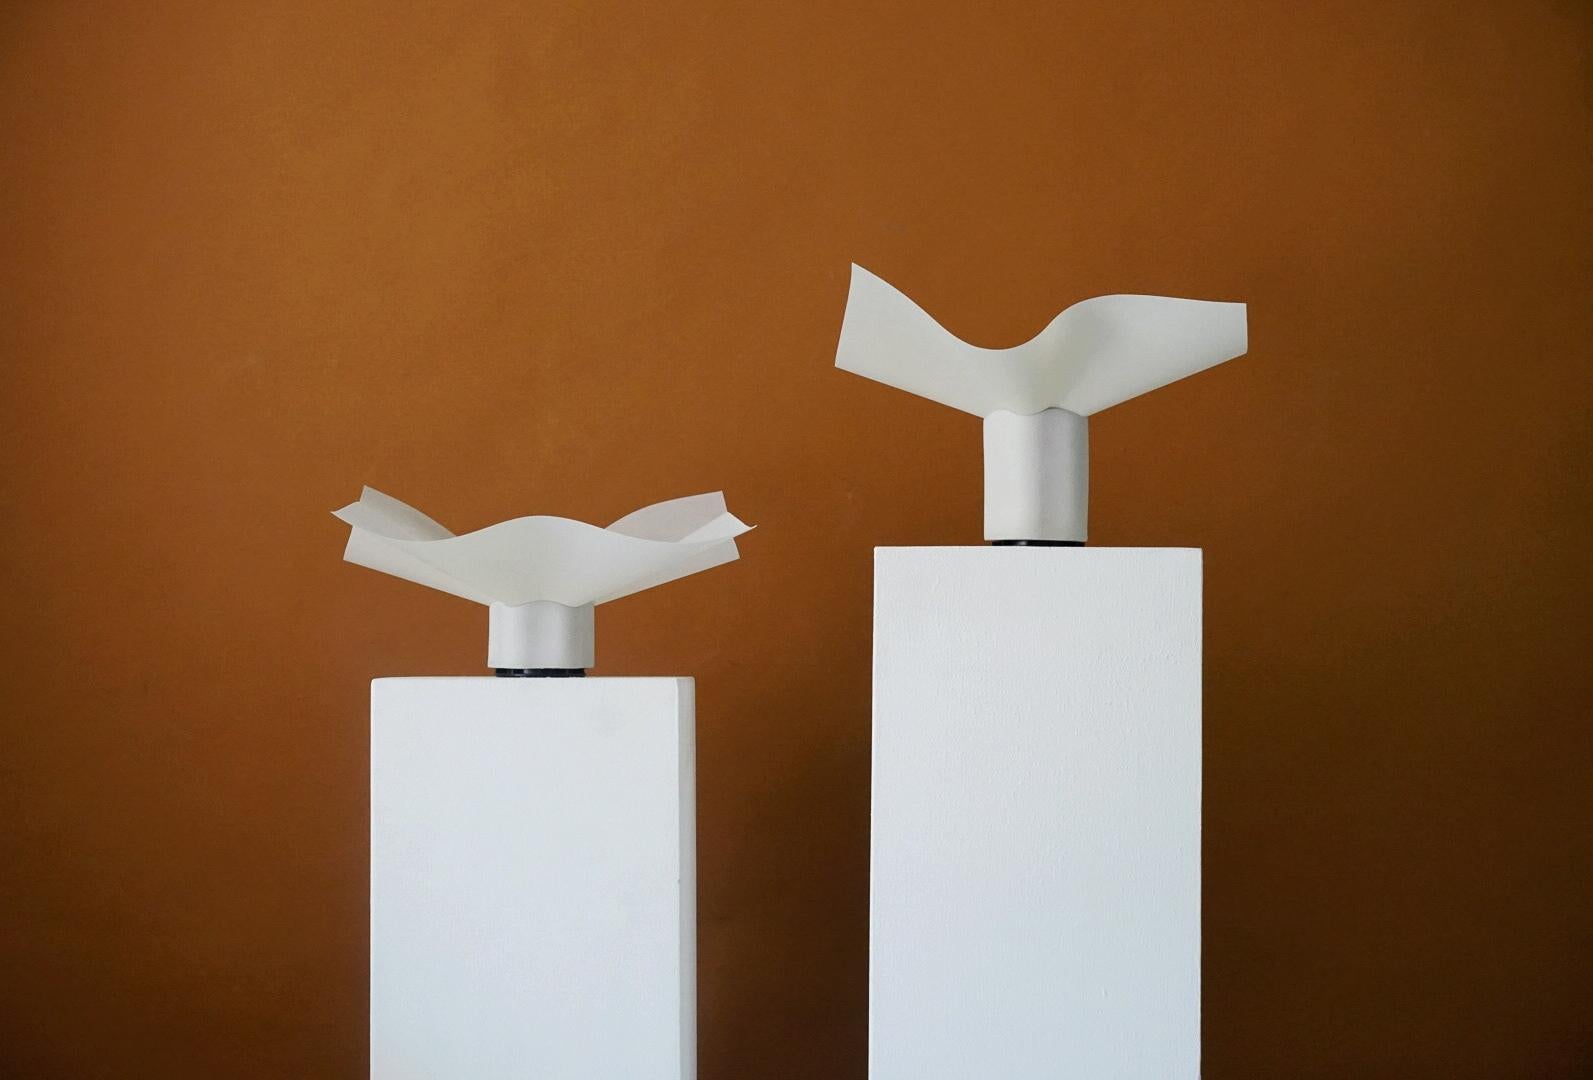 Rare paire de lampes de table Mario Bellini, Model Area 10 & Model Area 20, par le designer Mario Bellini pour Artemide, les années 1970. Les paires ont une hauteur différente, ce qui leur confère un aspect particulier en tant que paire ou groupe.